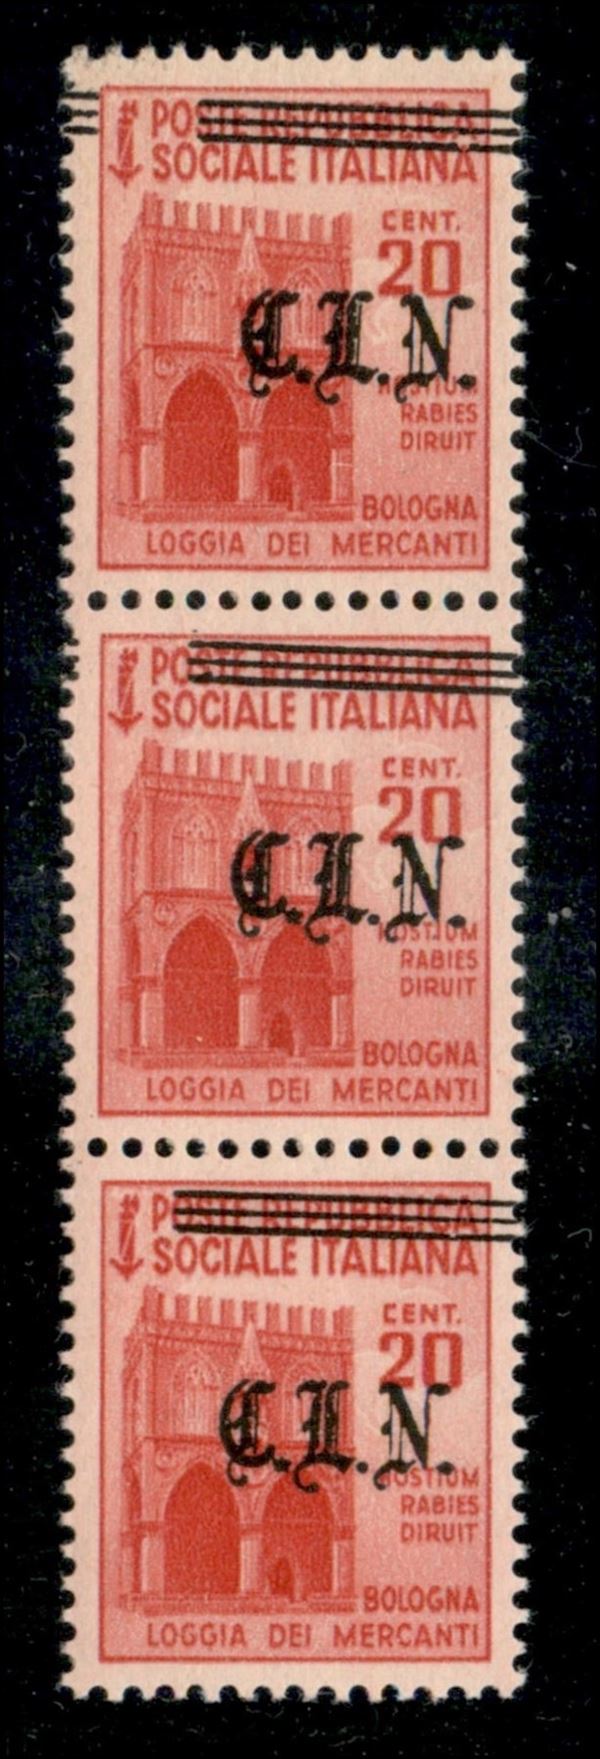 ITALIA / C.L.N. / Torino / Posta ordinaria